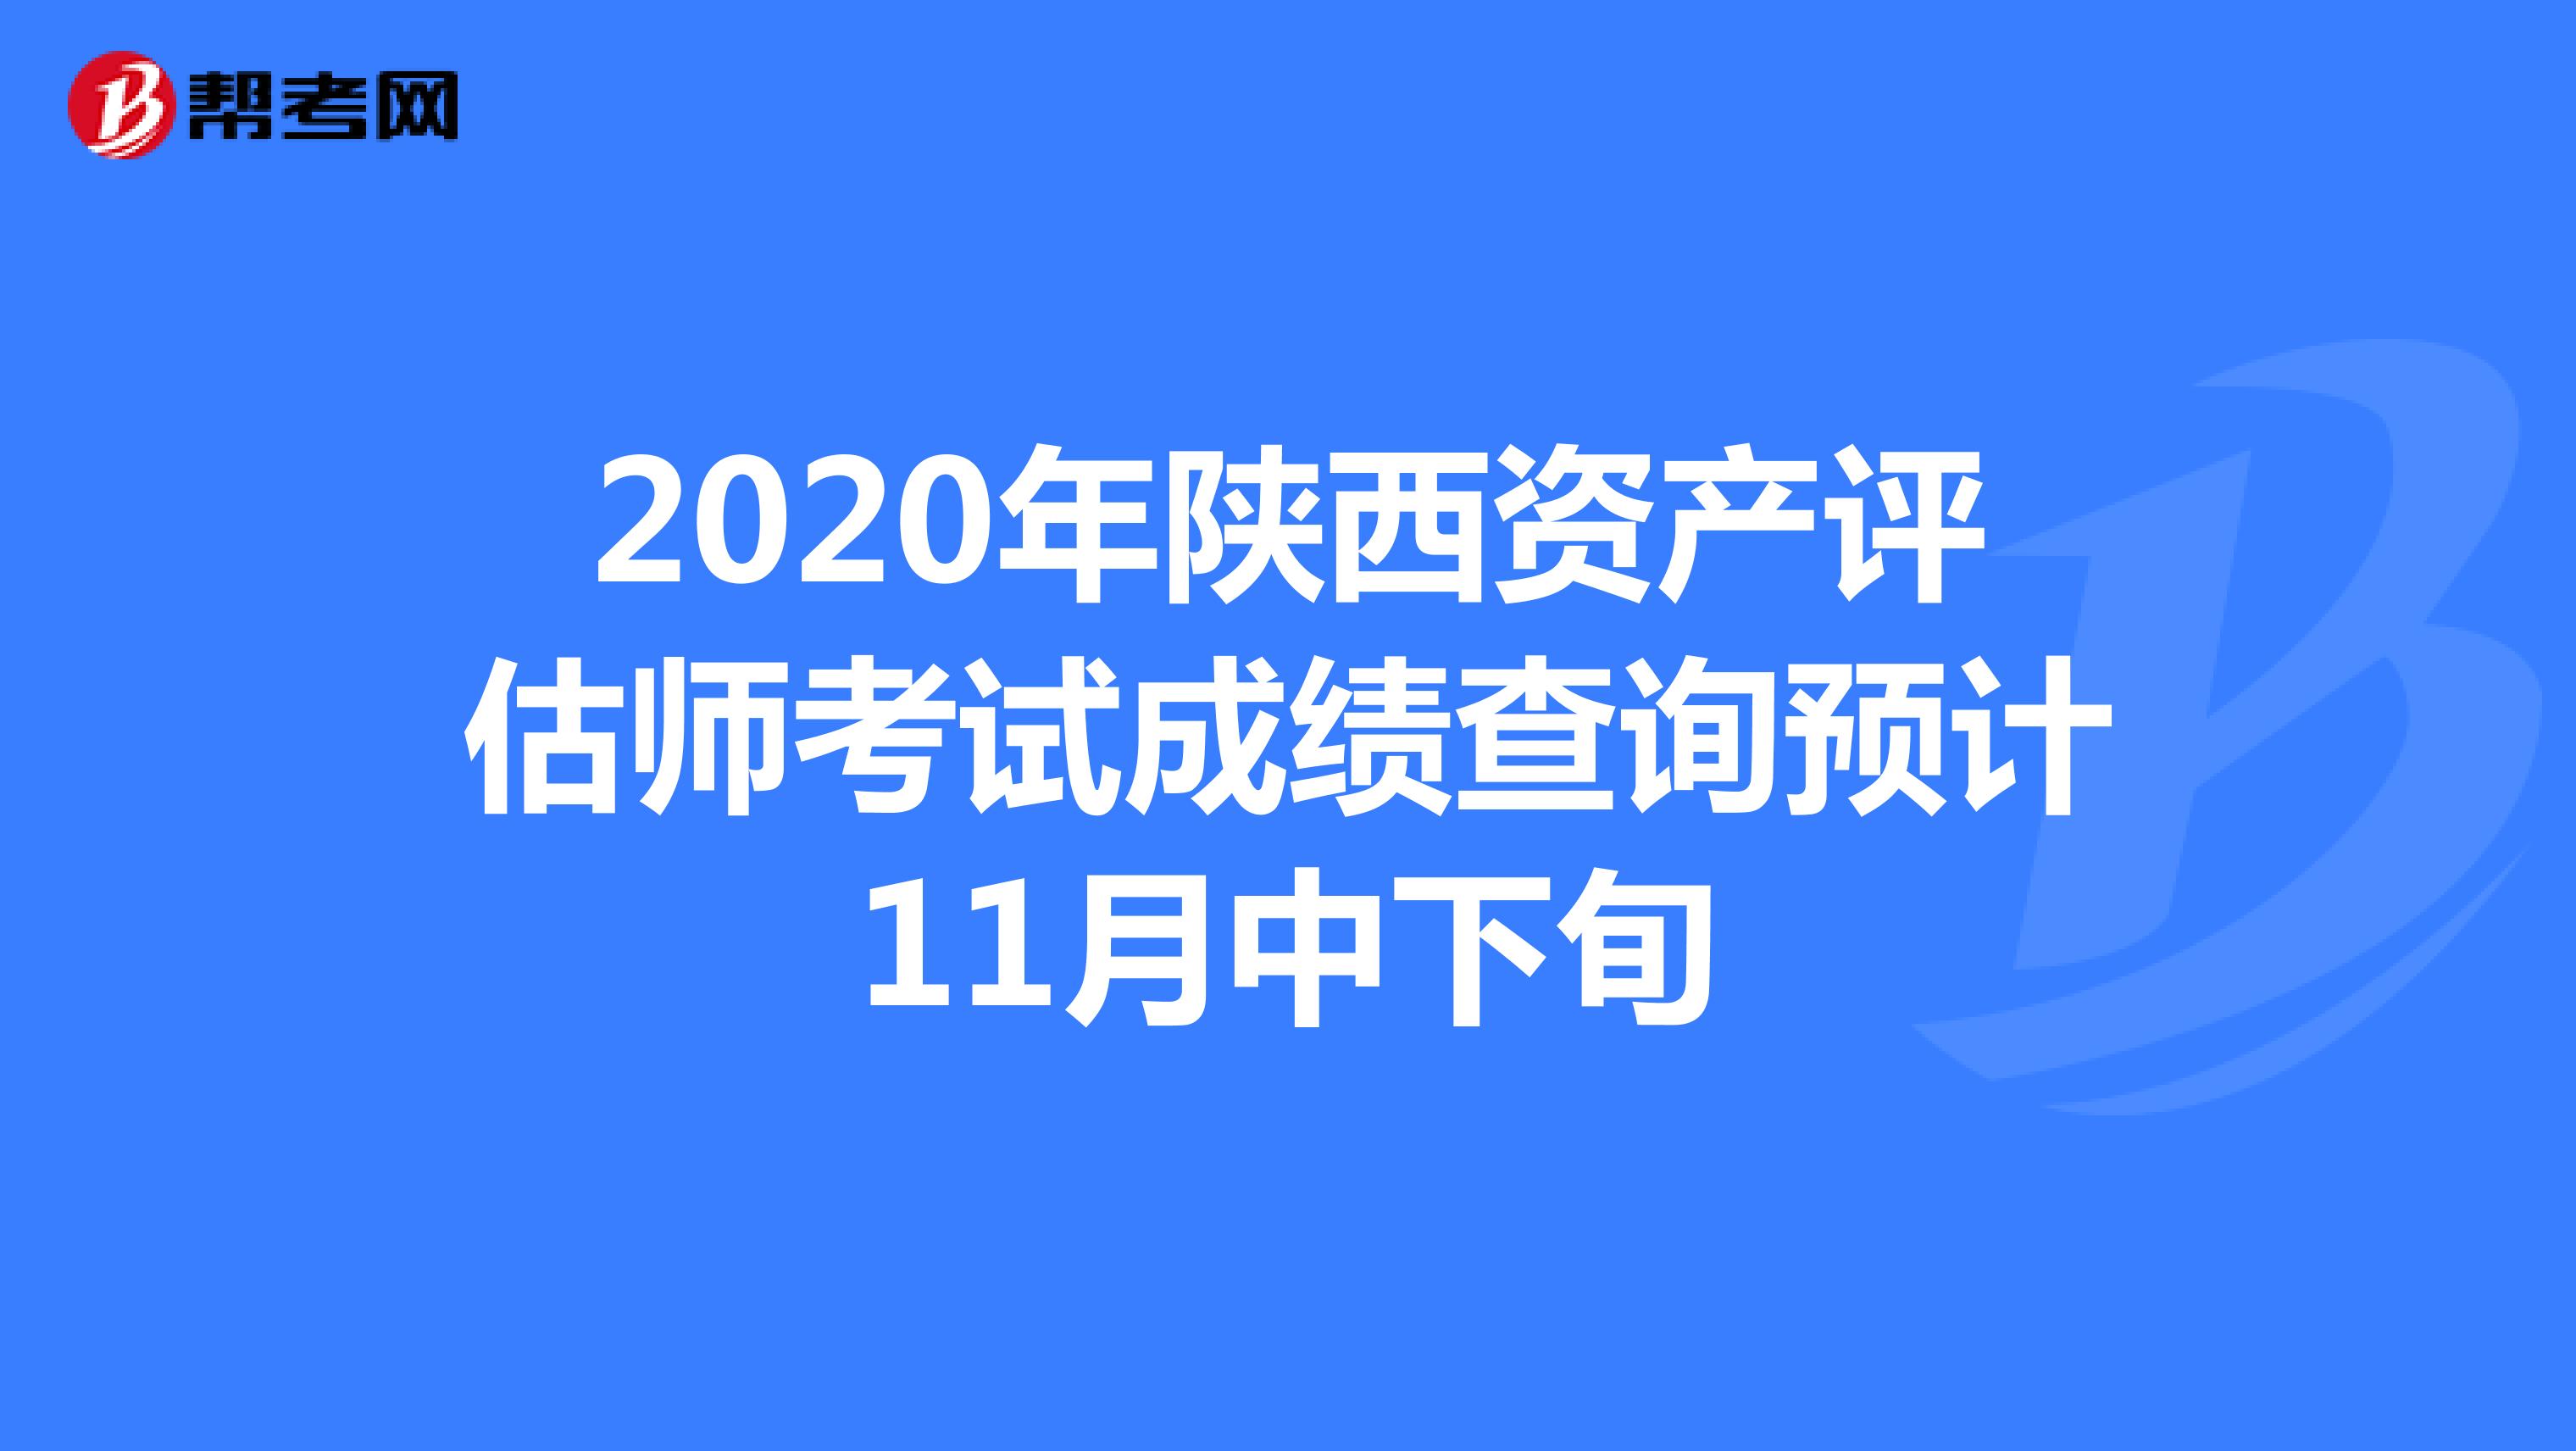 2020年陕西资产评估师考试成绩查询预计11月中下旬